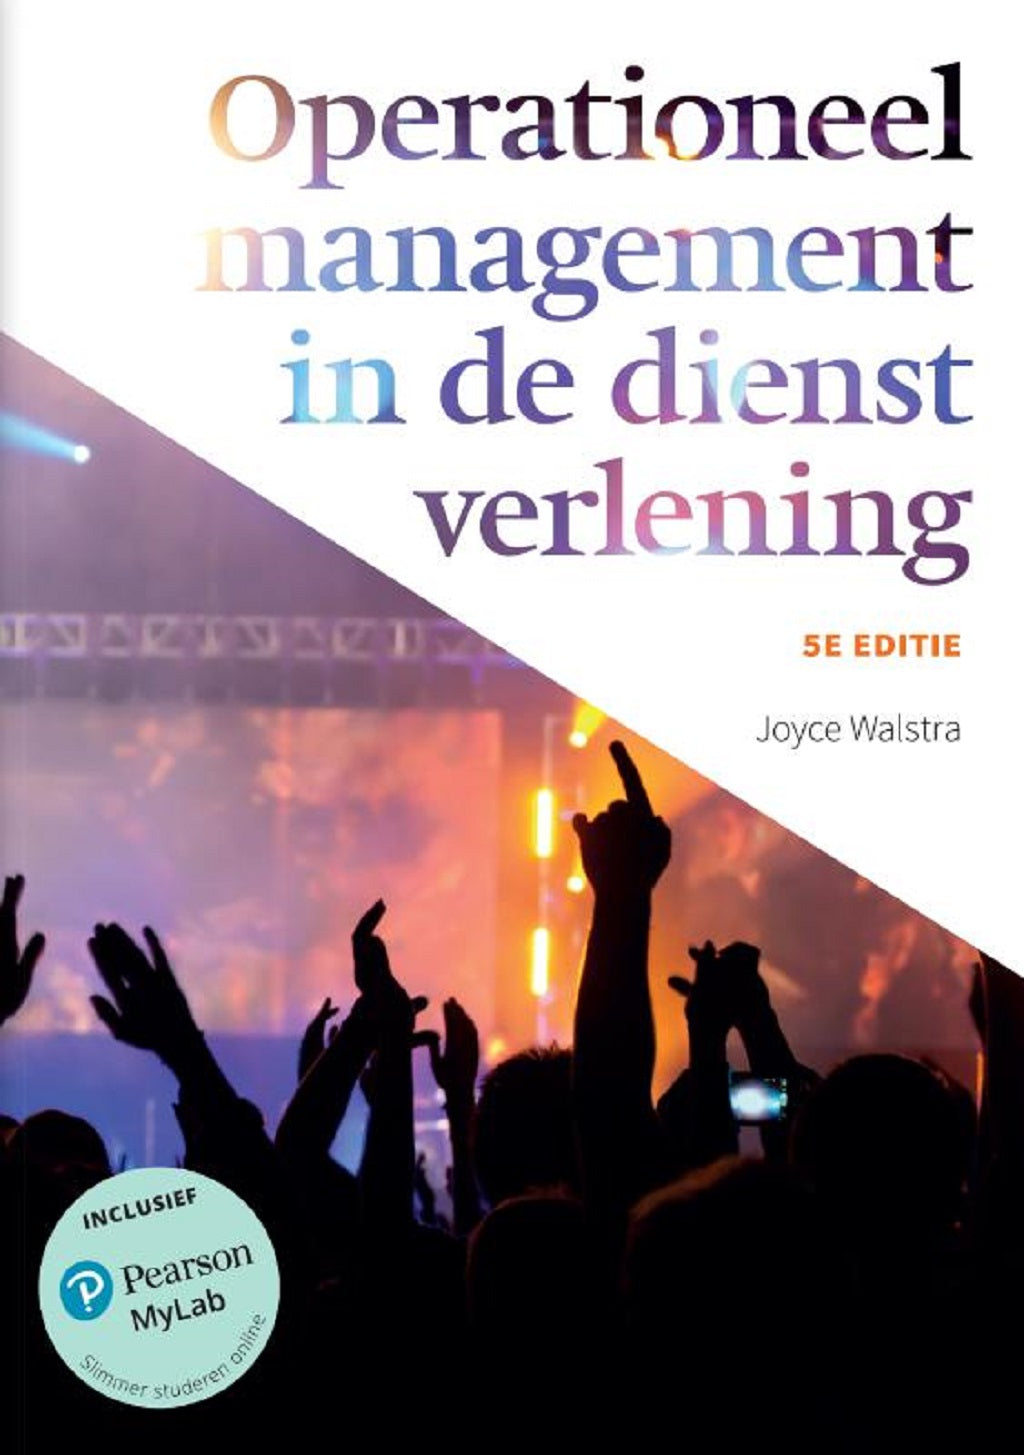 Operationeel management in de dienstverlening, 5e editie (Print boek + MyLab toegangscode)